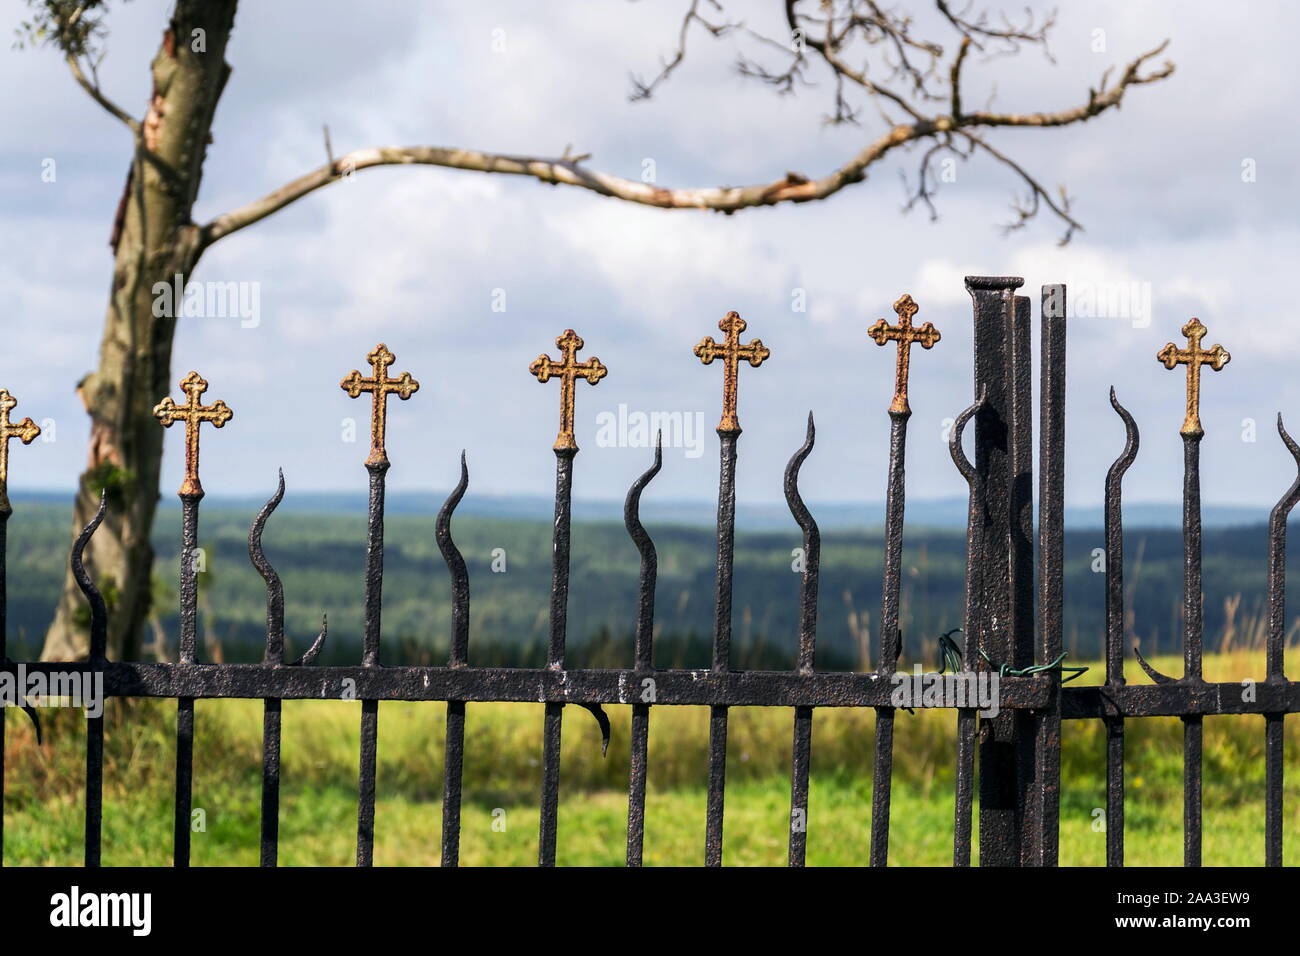 Belle petite décoration clôture croisés, cimetière mur avec bois verts en arrière-plan, la vie et la mort concept Banque D'Images